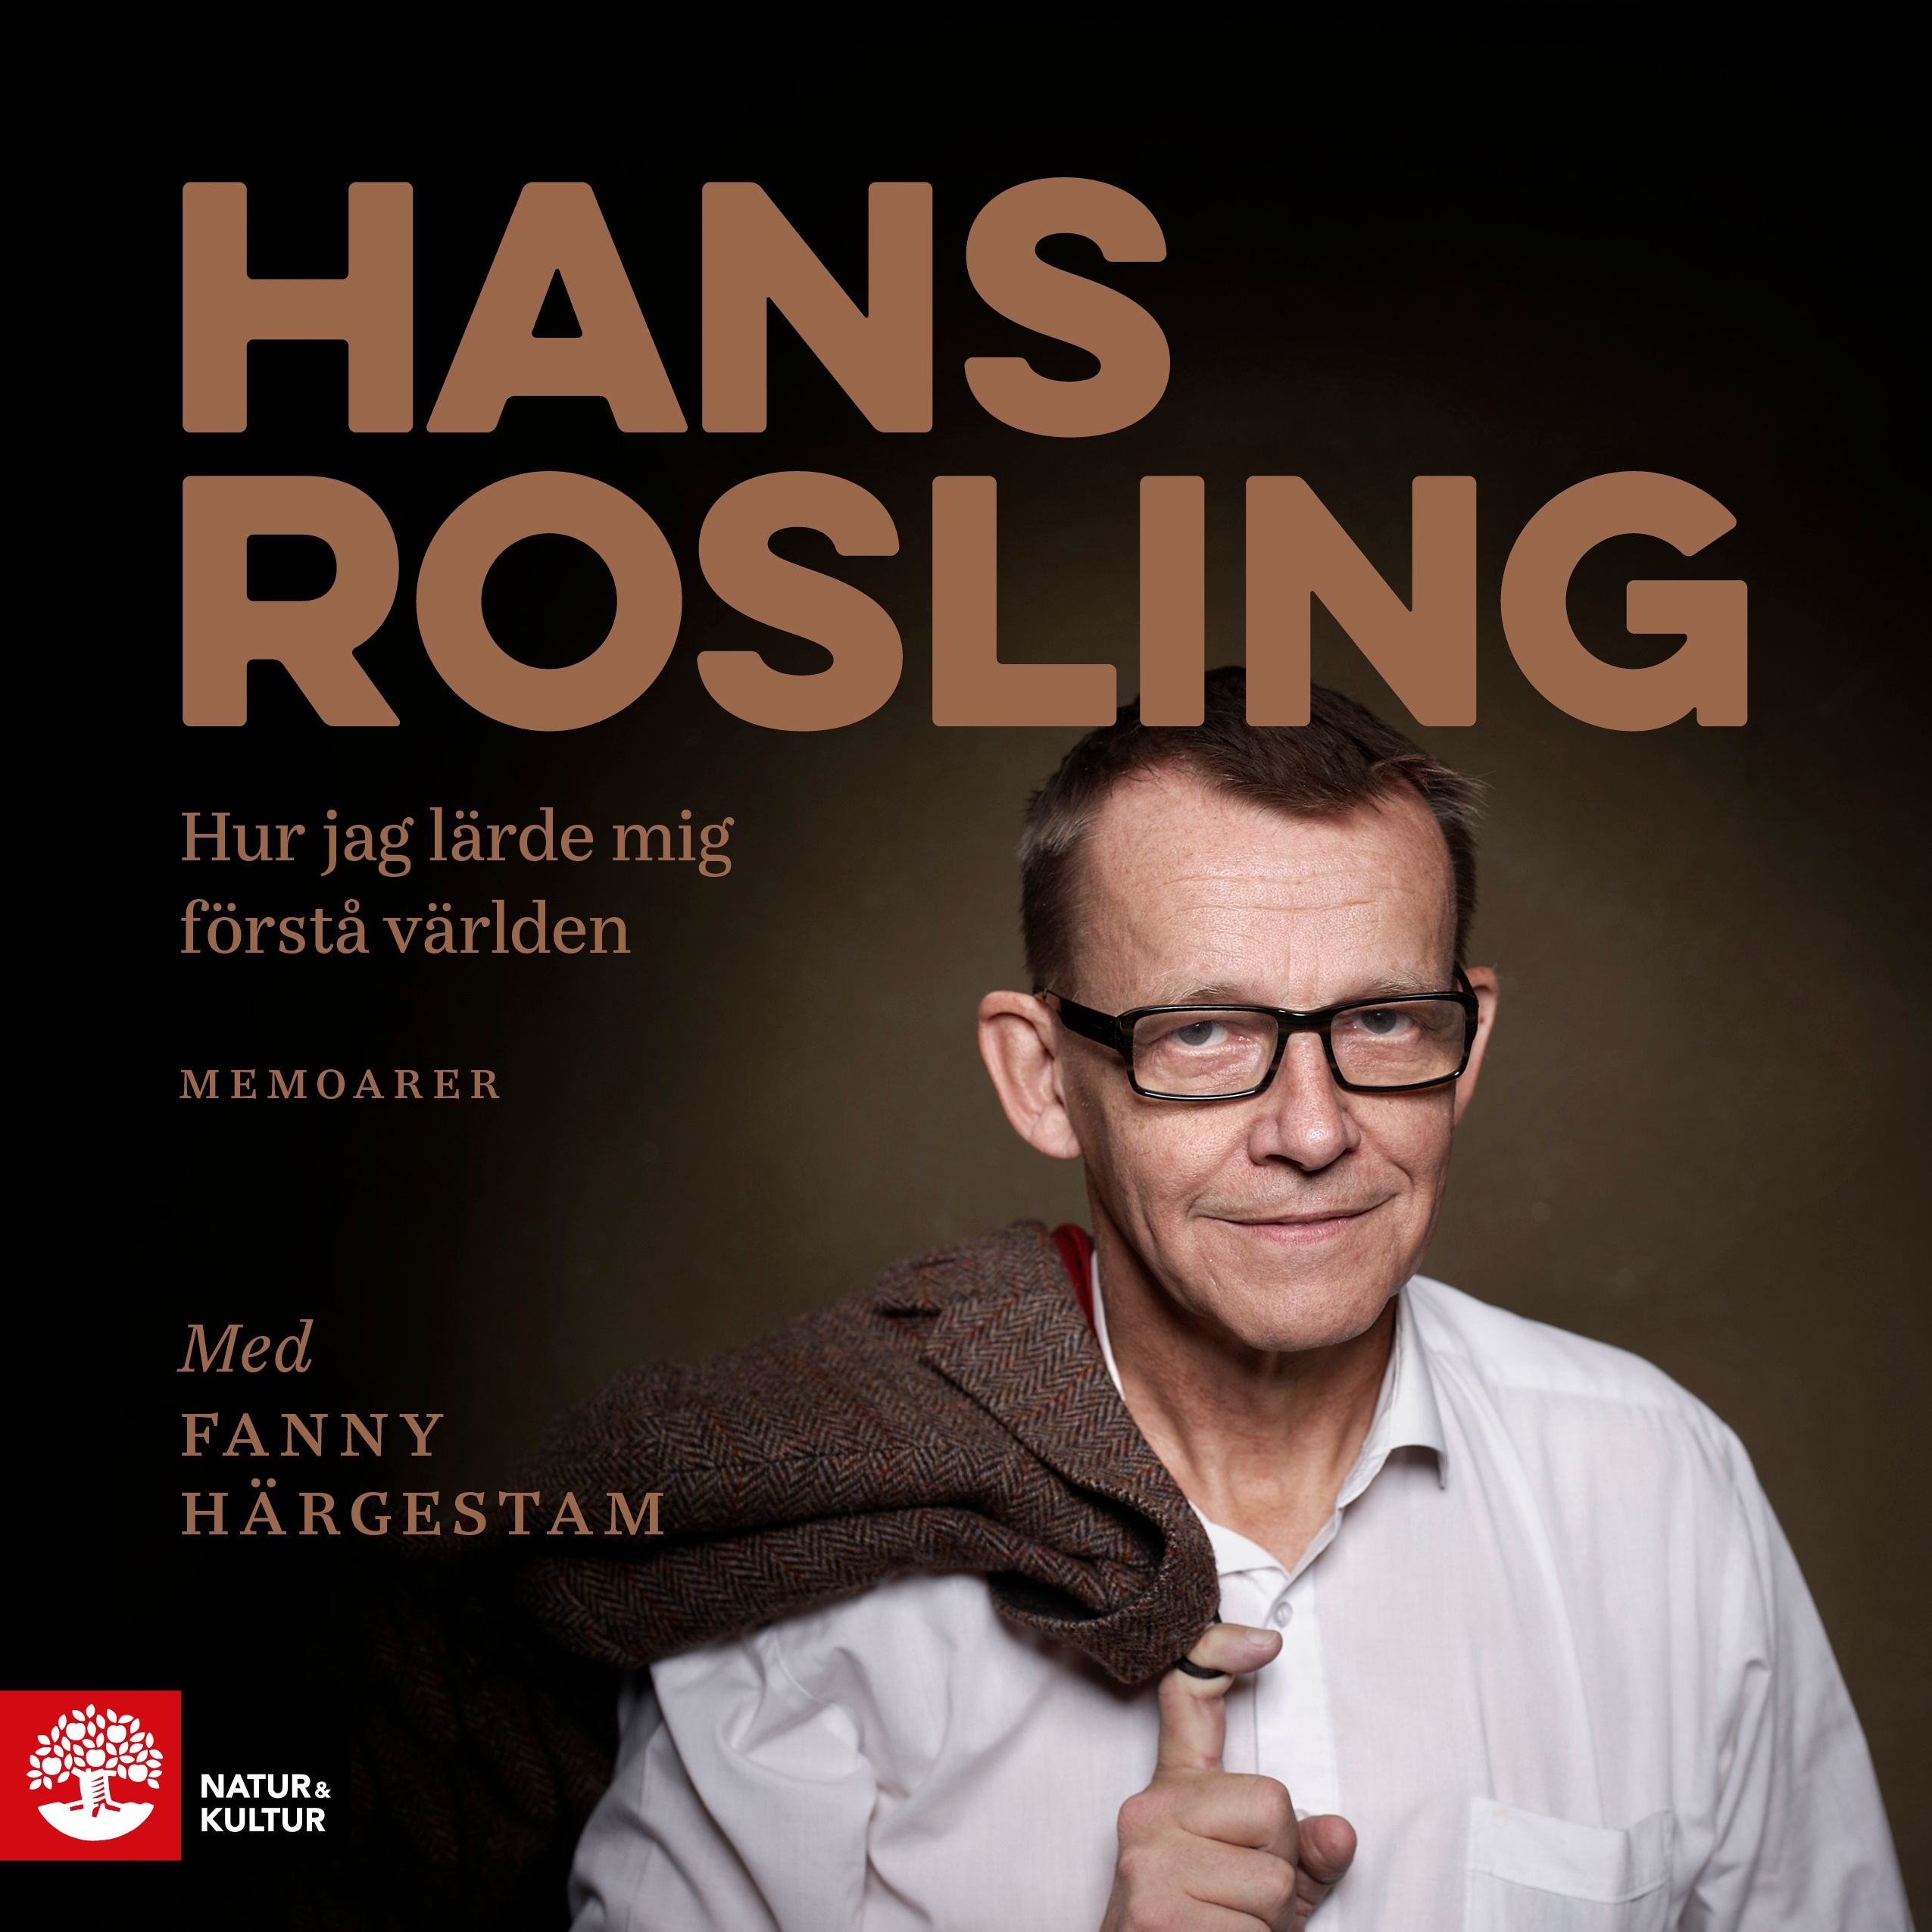 Hur jag lärde mig förstå världen, ljudbok av Fanny Härgestam, Hans Rosling